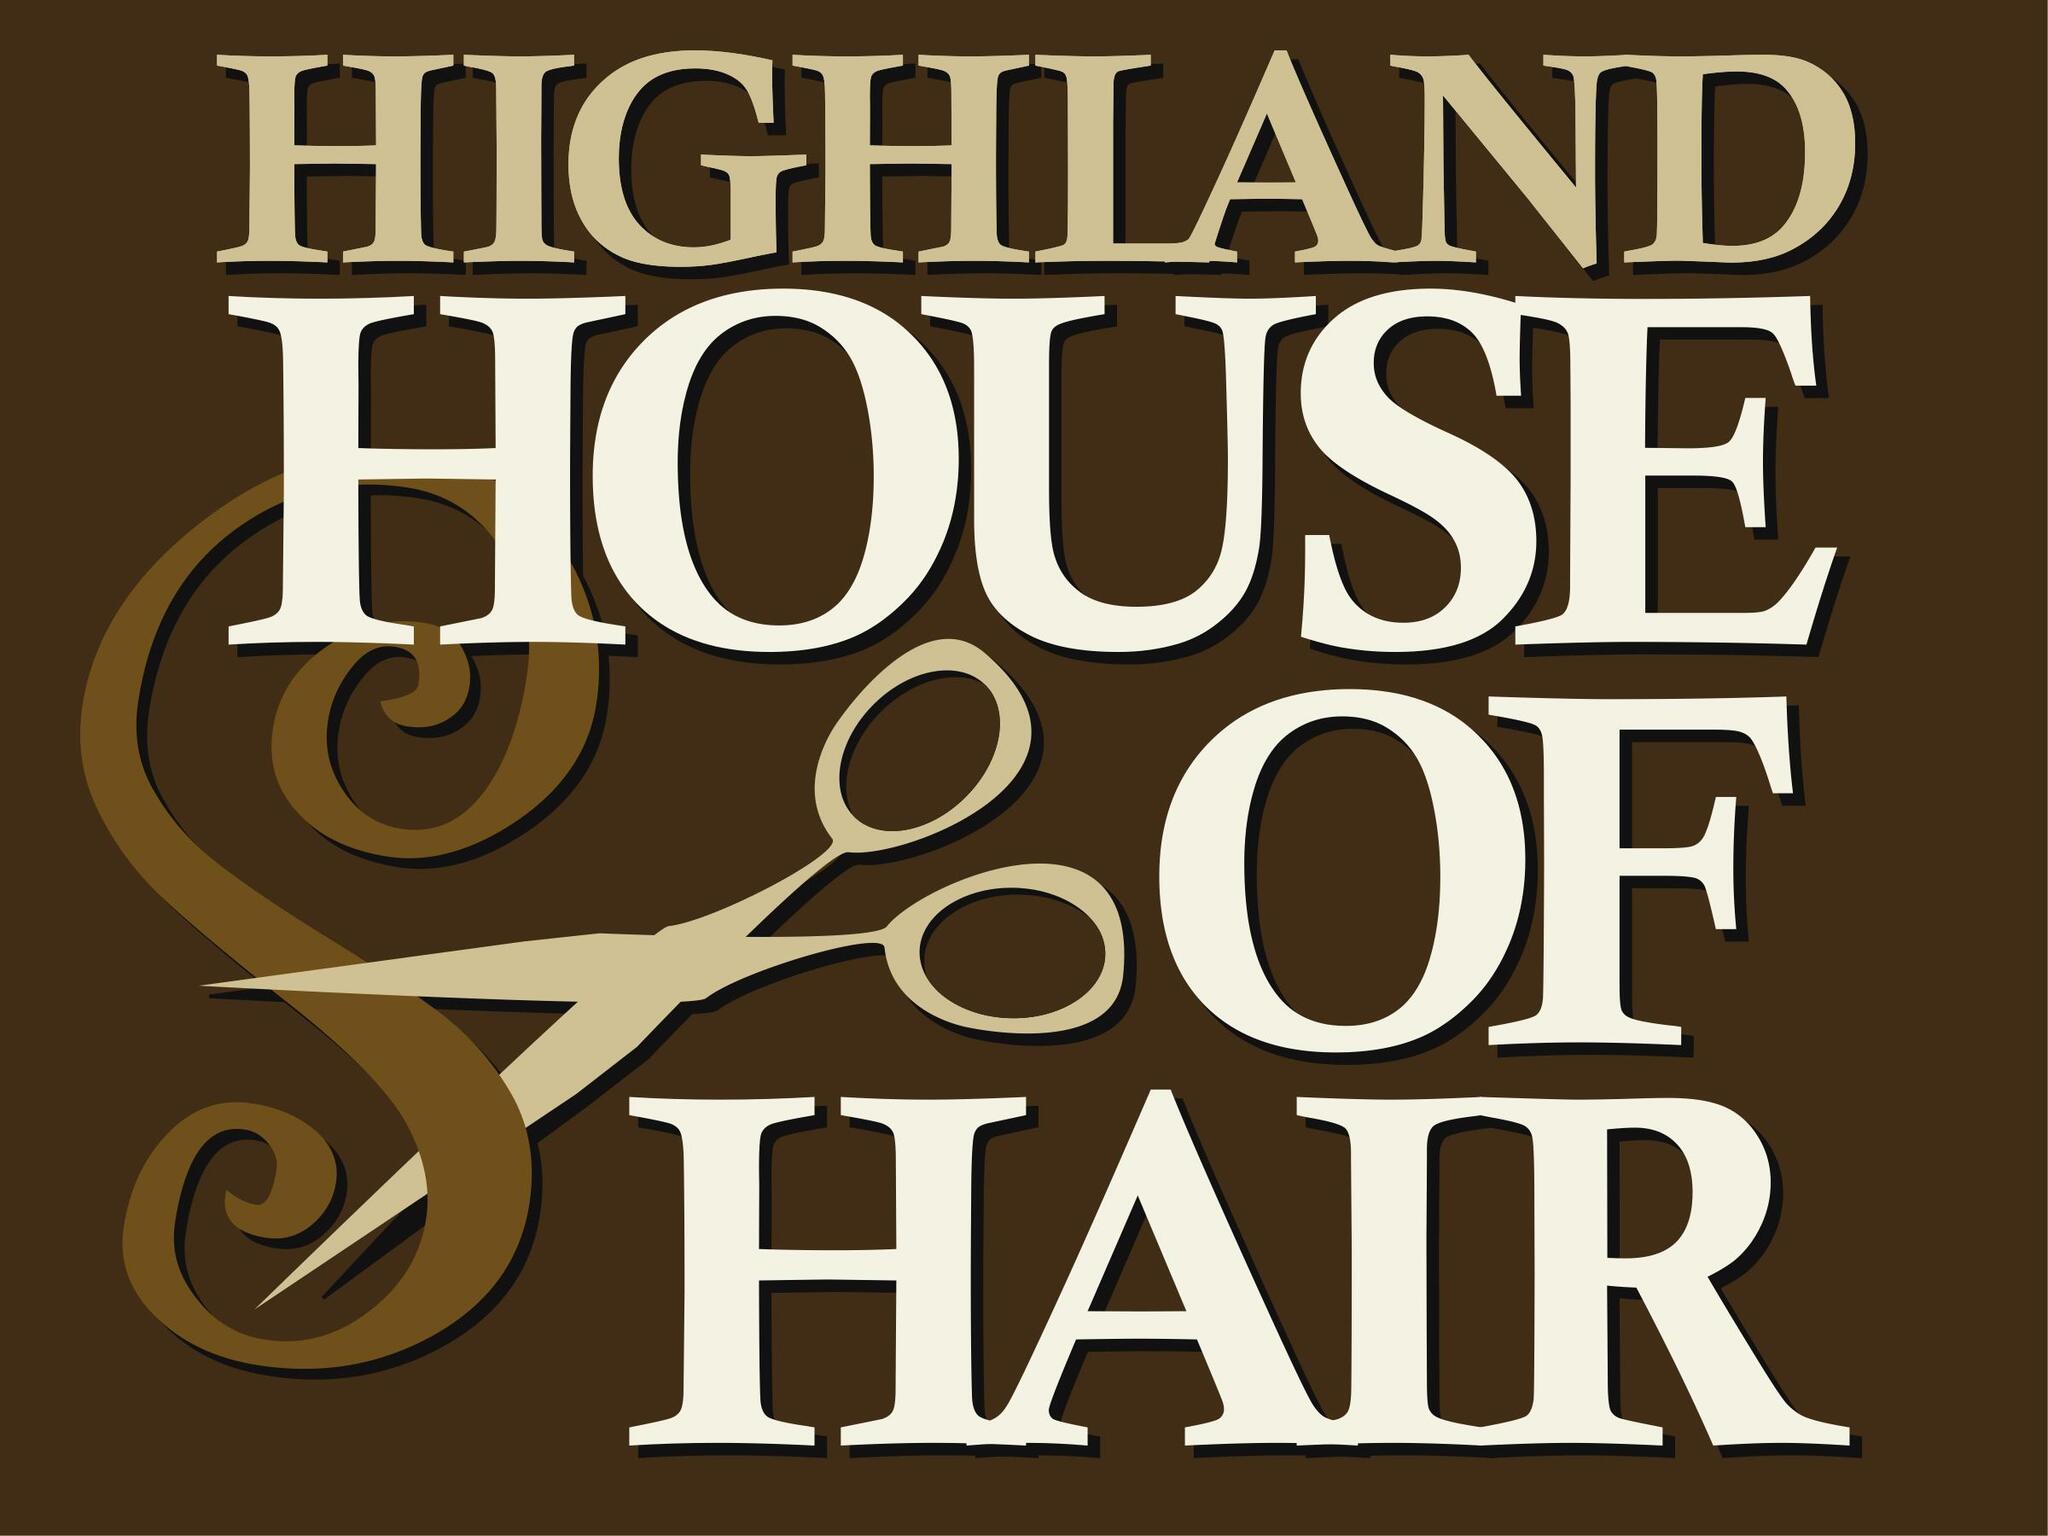 HOUSE OF HAIR LA